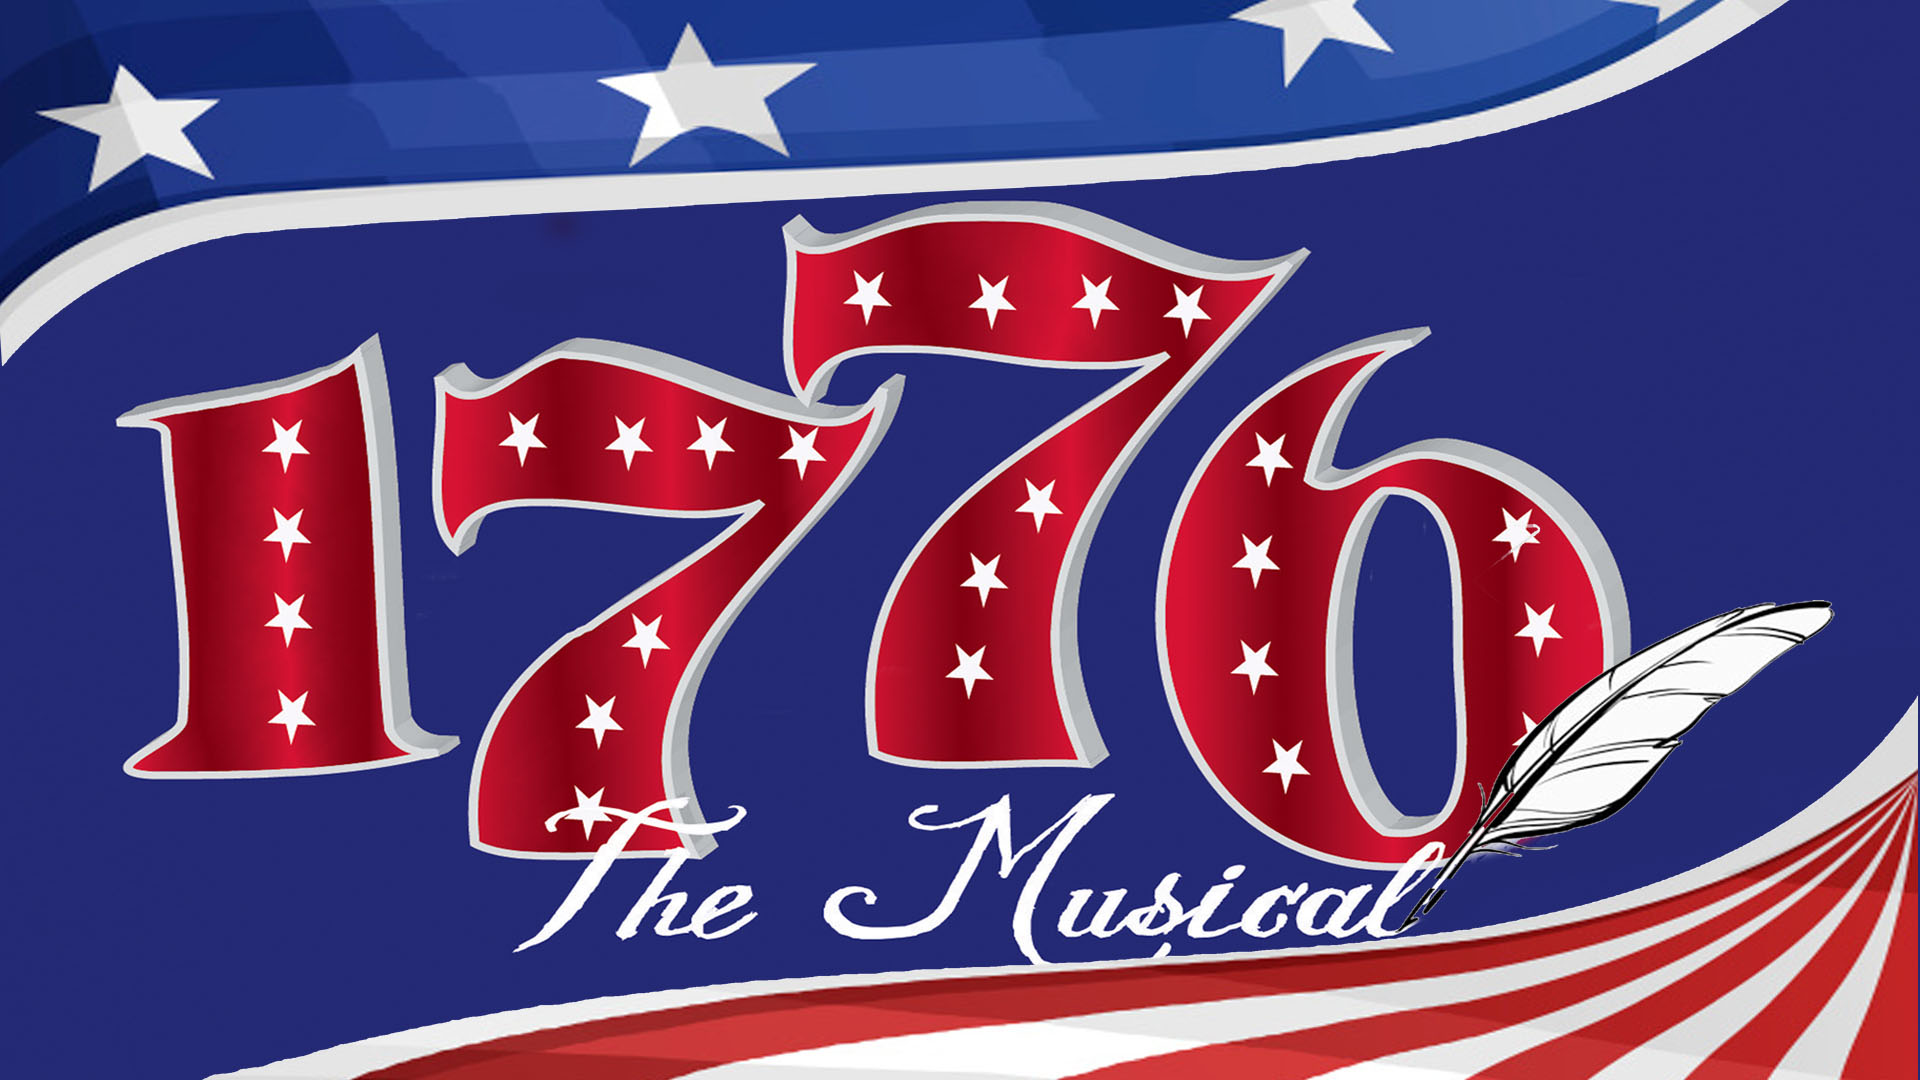 1776 logo for widescreen